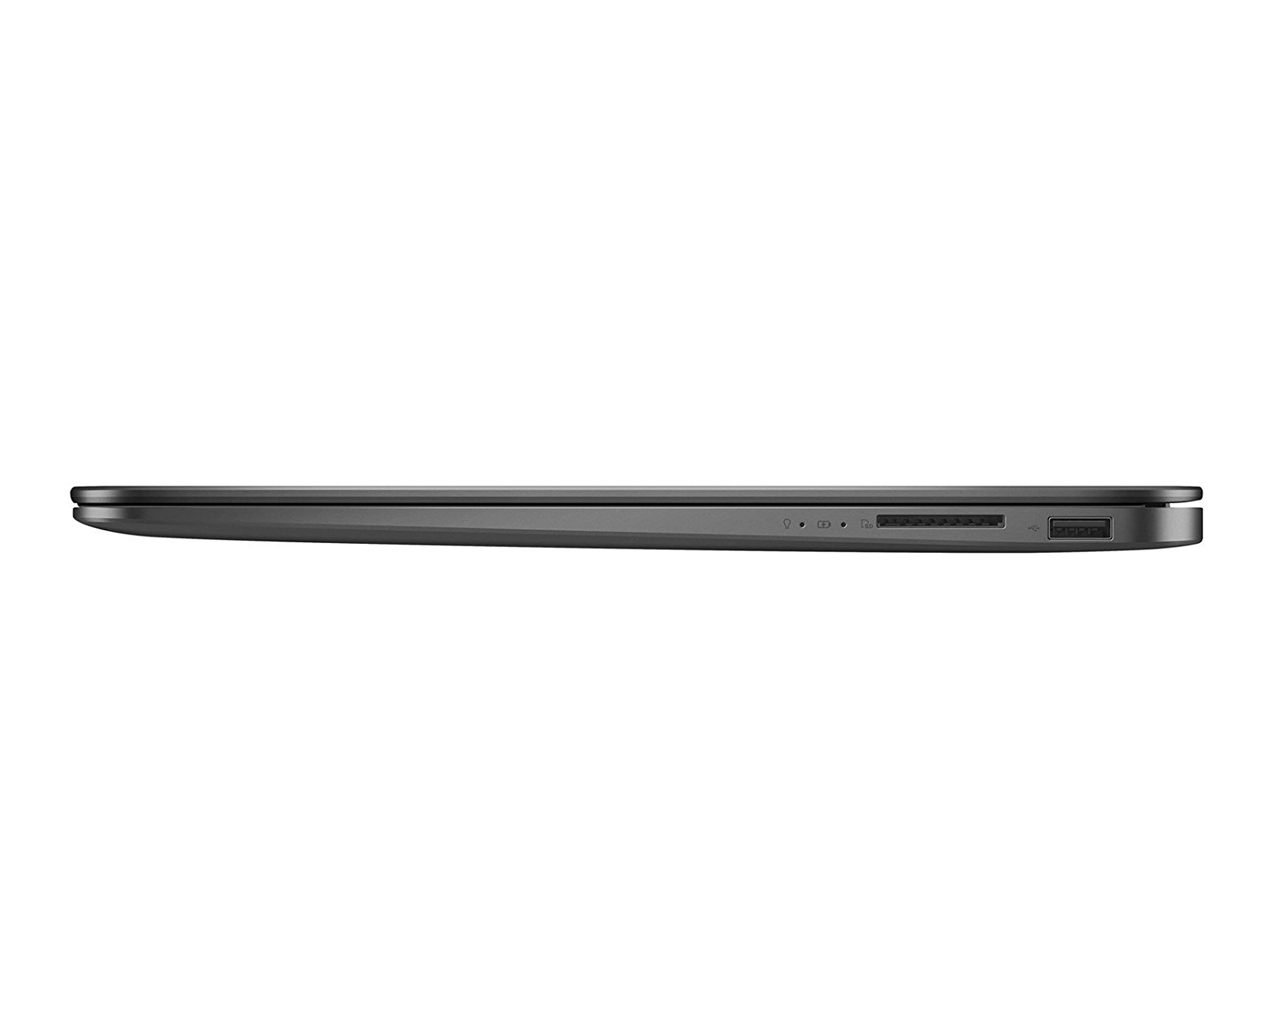 Asus ZenBook UX430UA-DH74